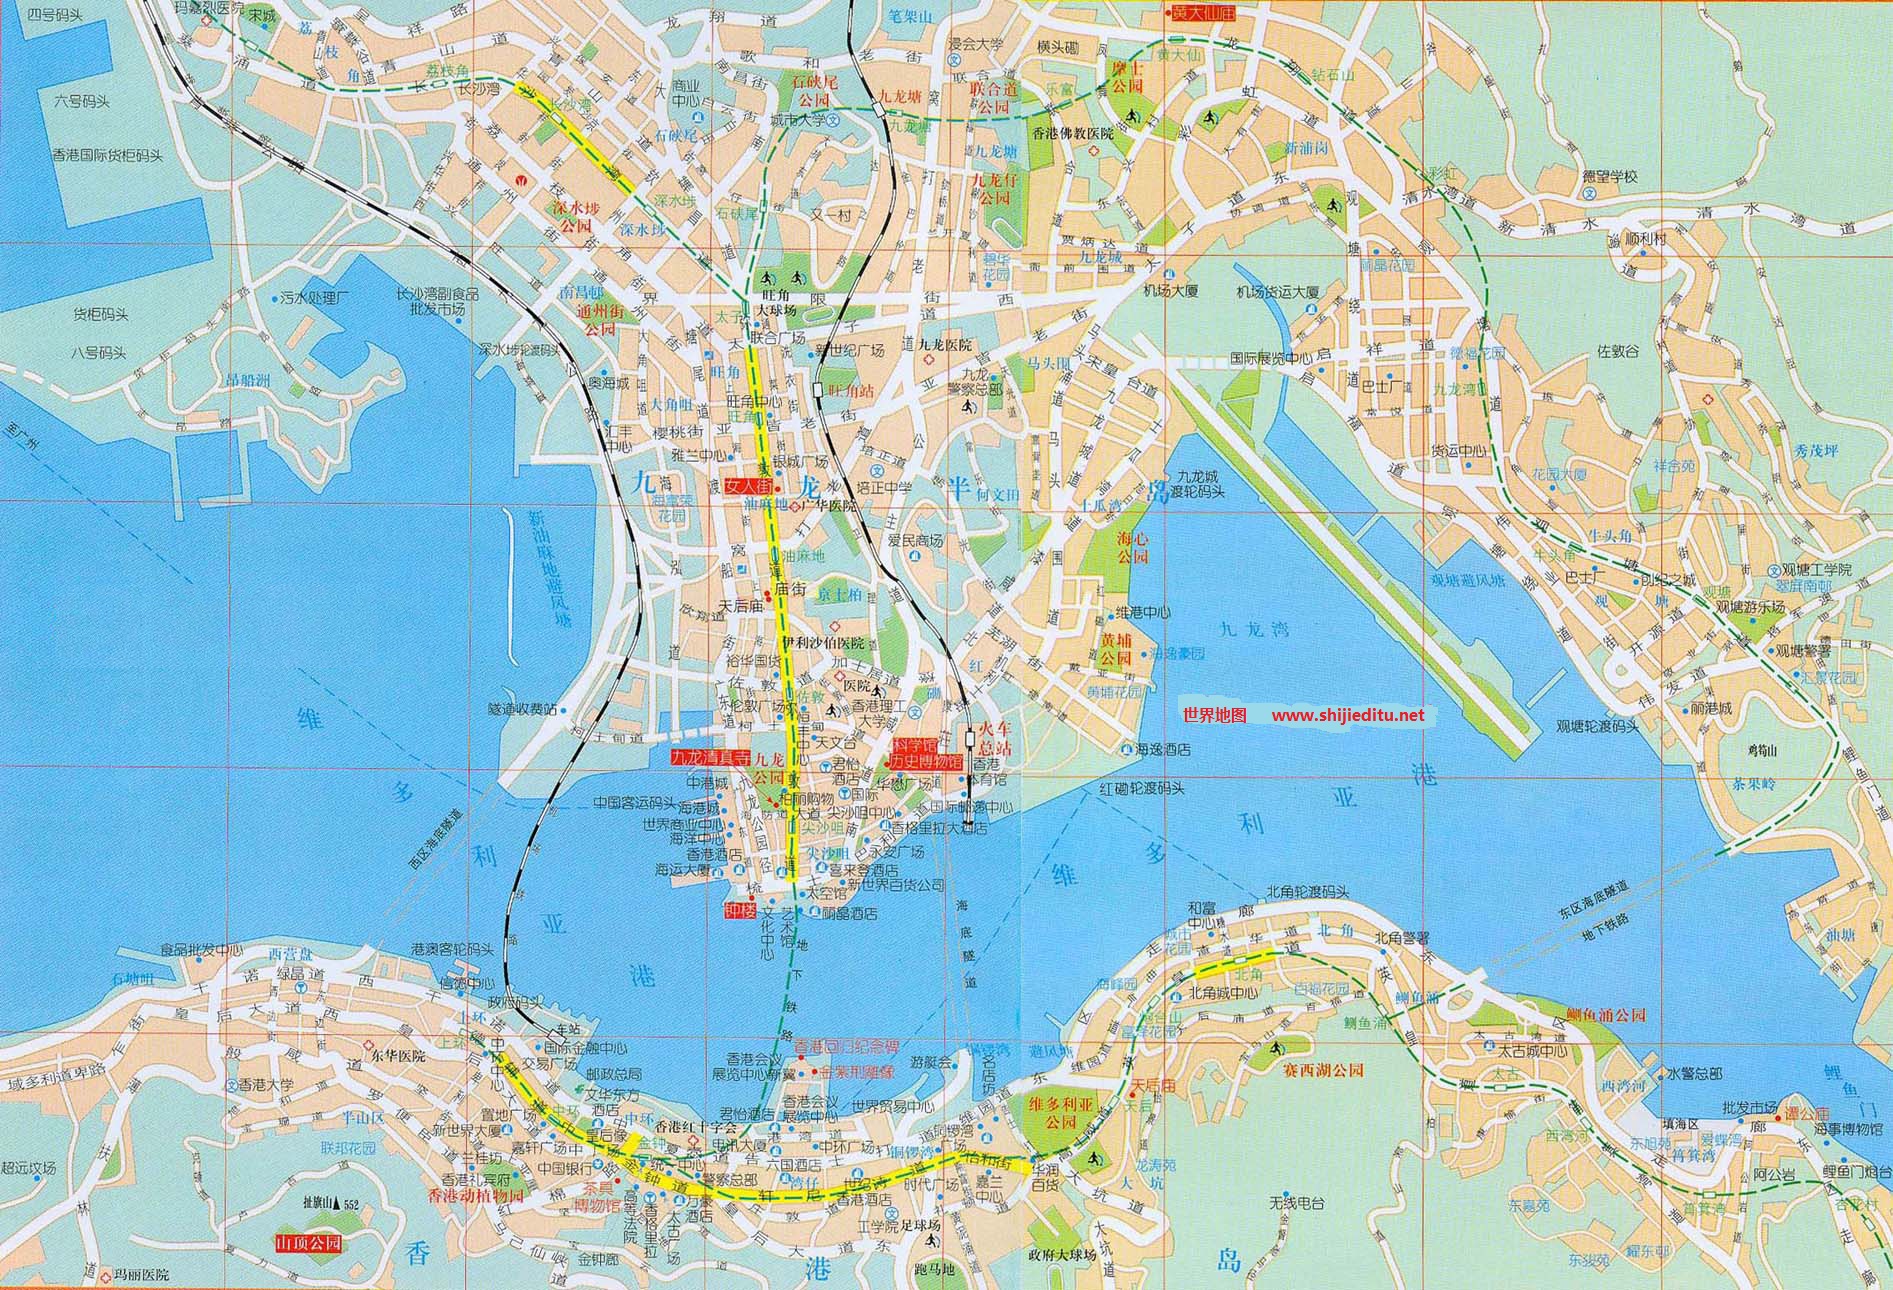 香港旅游地图高清版,旅游地图全图高清版 - 伤感说说吧